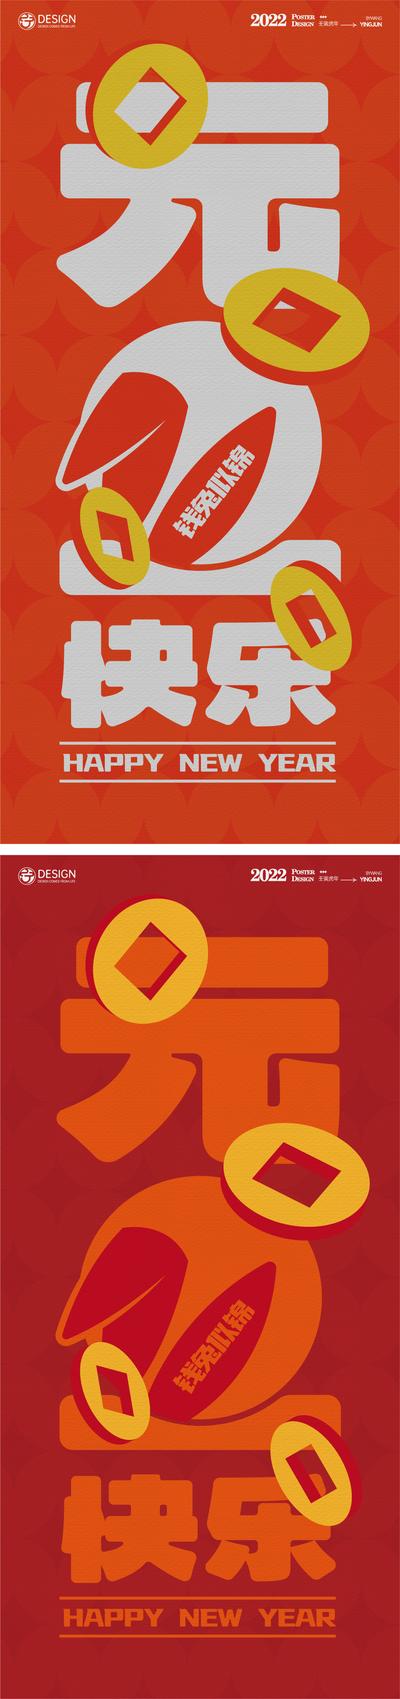 南门网 海报 房地产 公历节日 元旦 新年 兔年 兔子 创意 系列